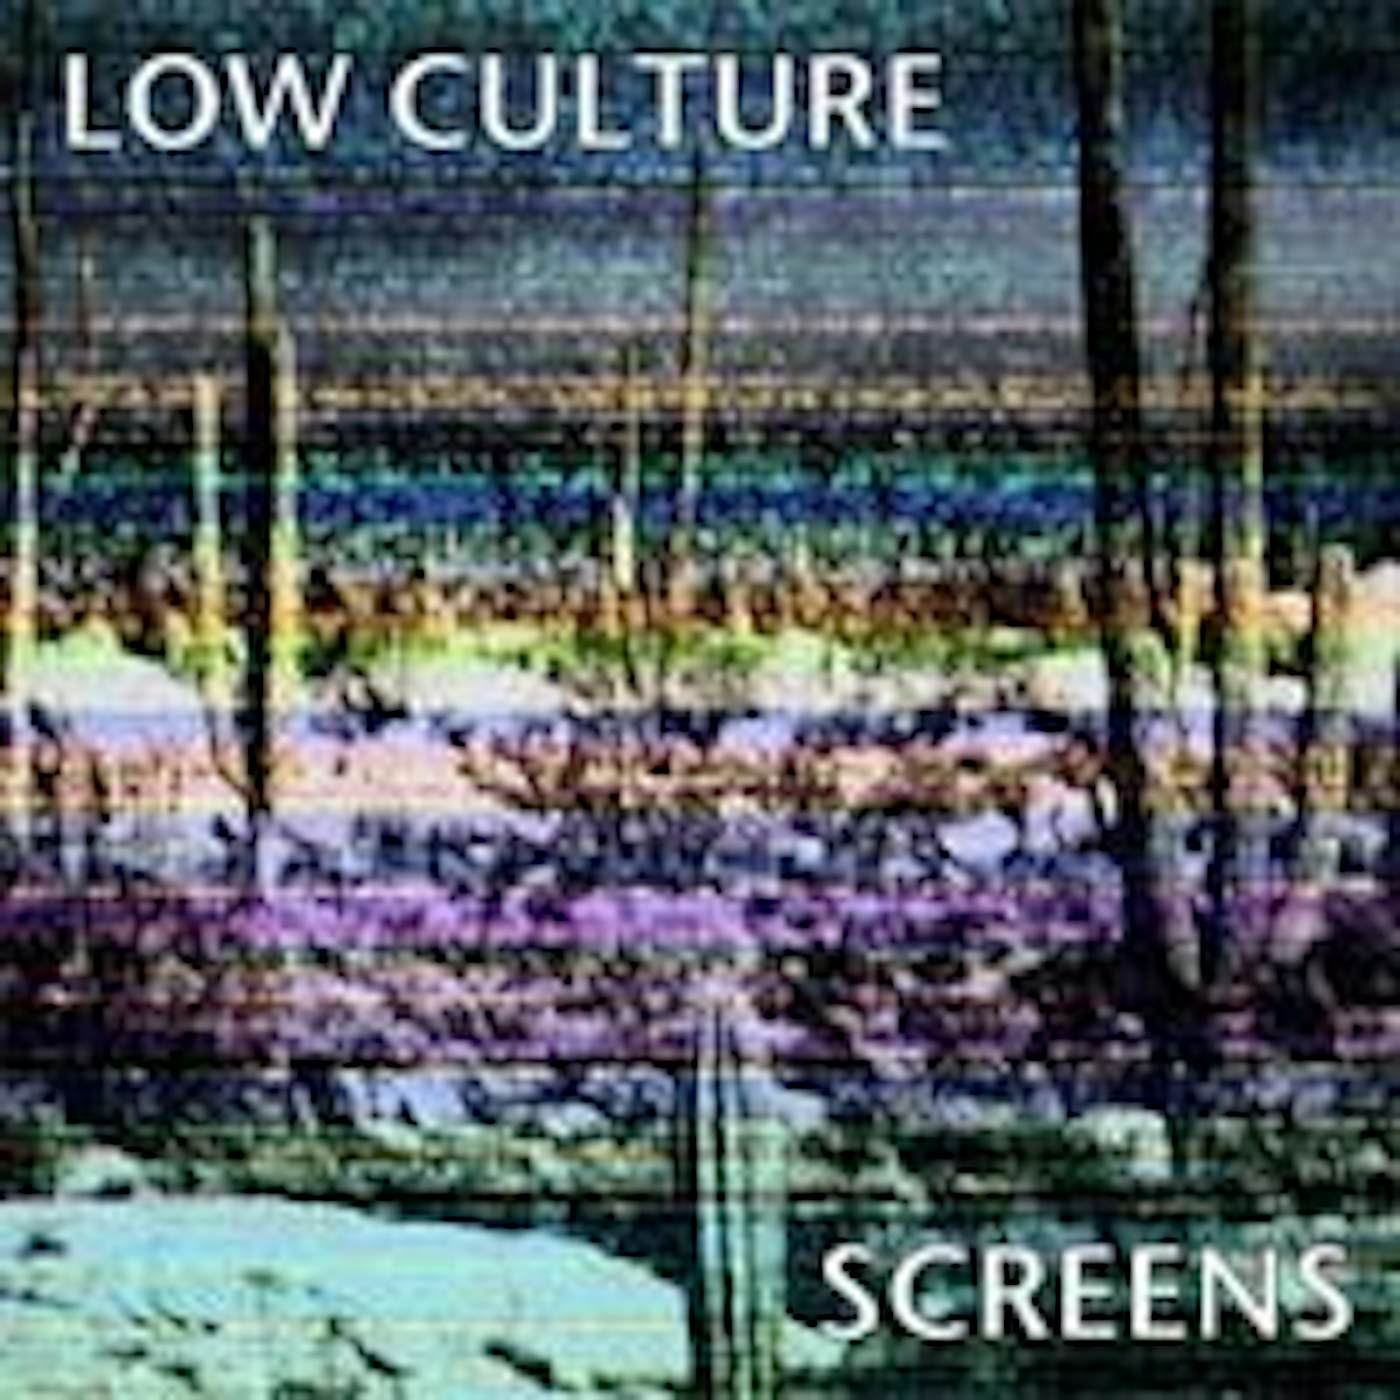 The Low Culture Screens Vinyl Record